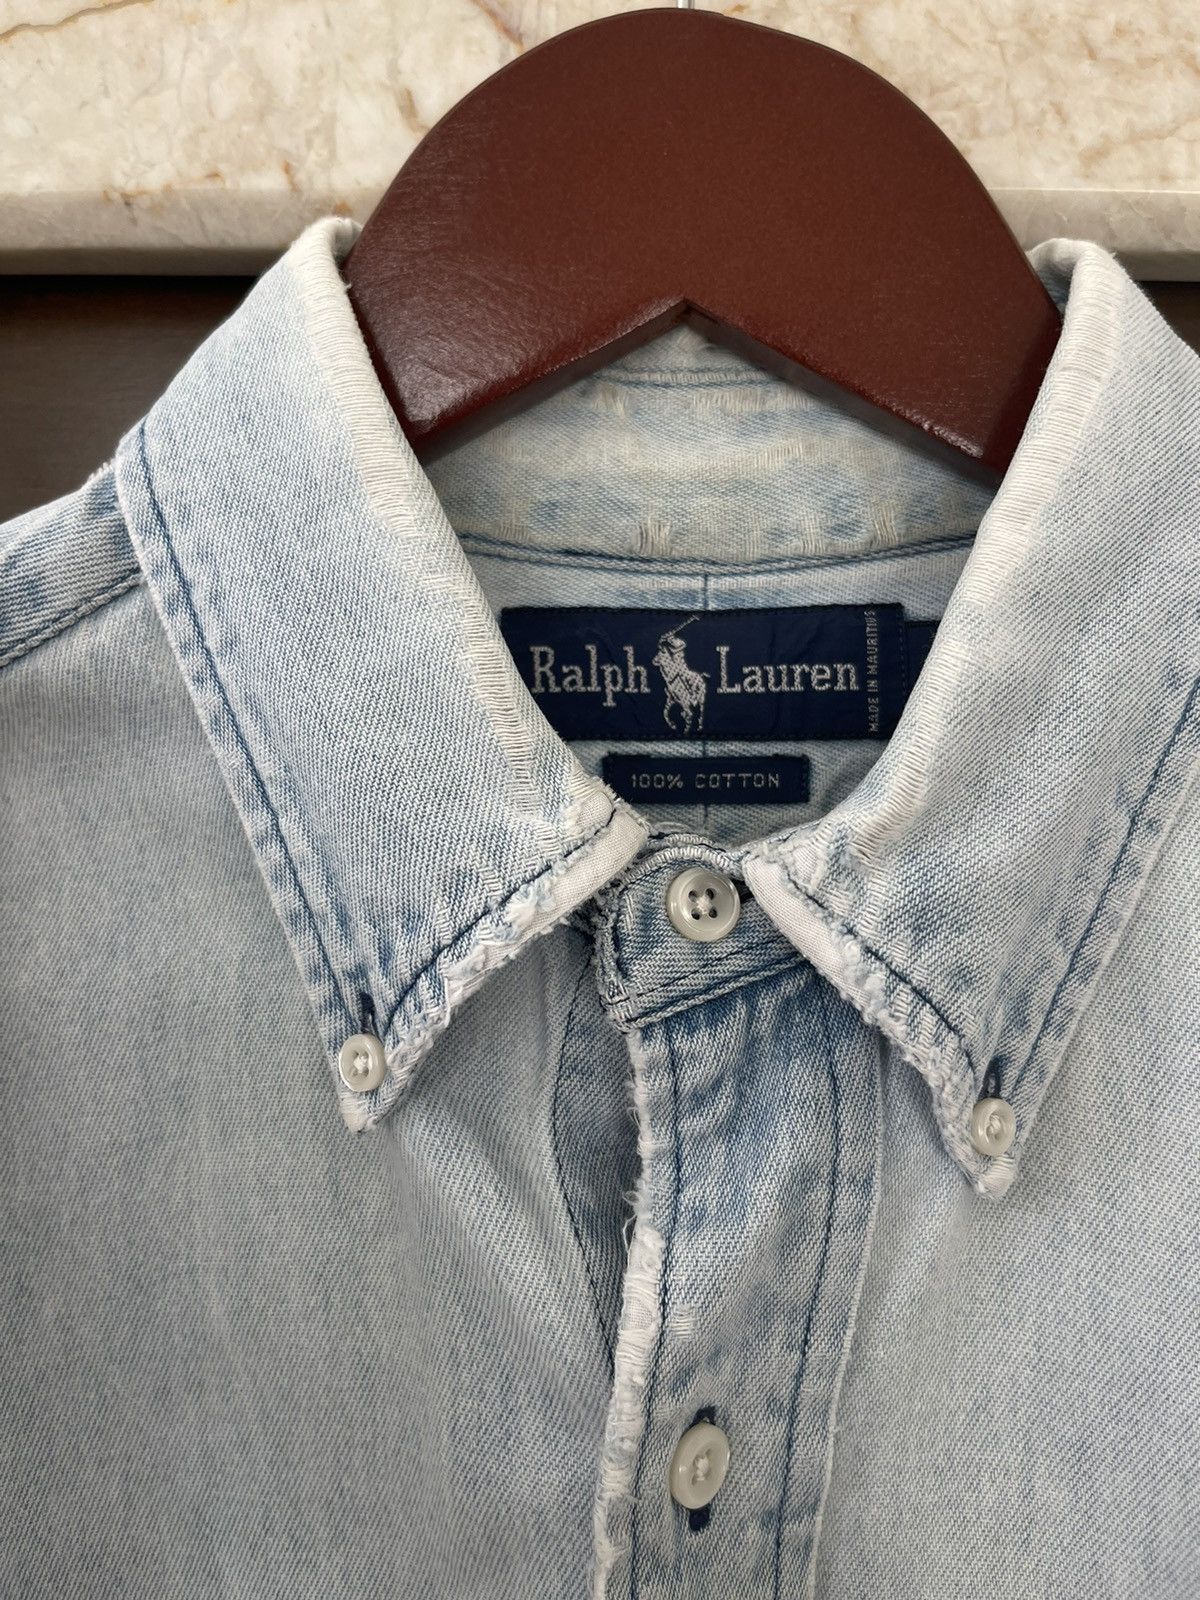 Ralph Lauren 1980s Vintage Distressed Ralph Laure Denim Oxford Shirt Size US L / EU 52-54 / 3 - 4 Thumbnail